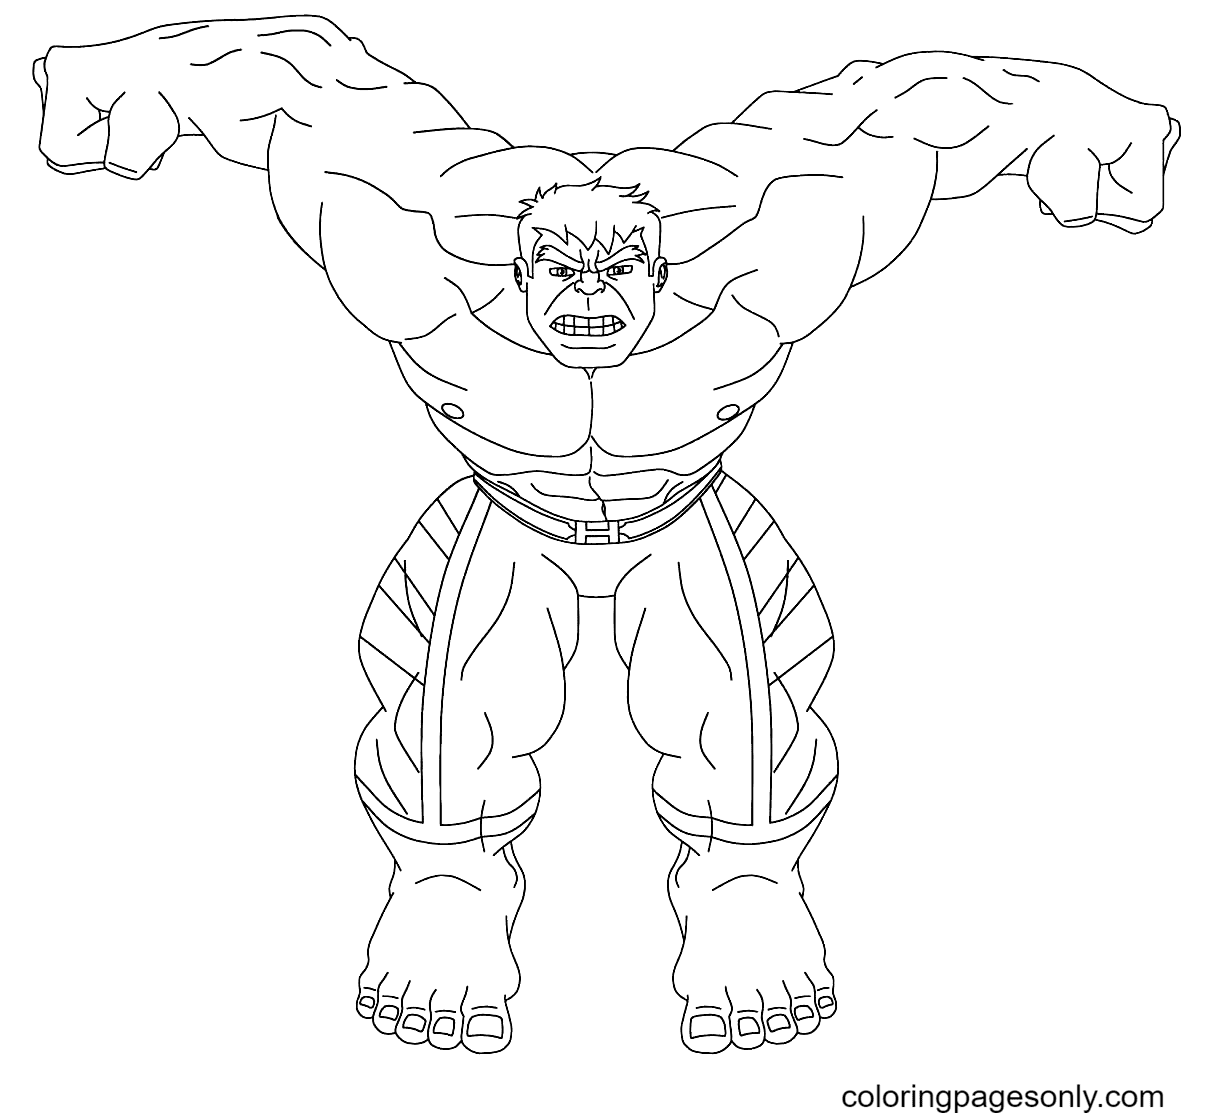 Pagina da colorare di Hulk gratuita